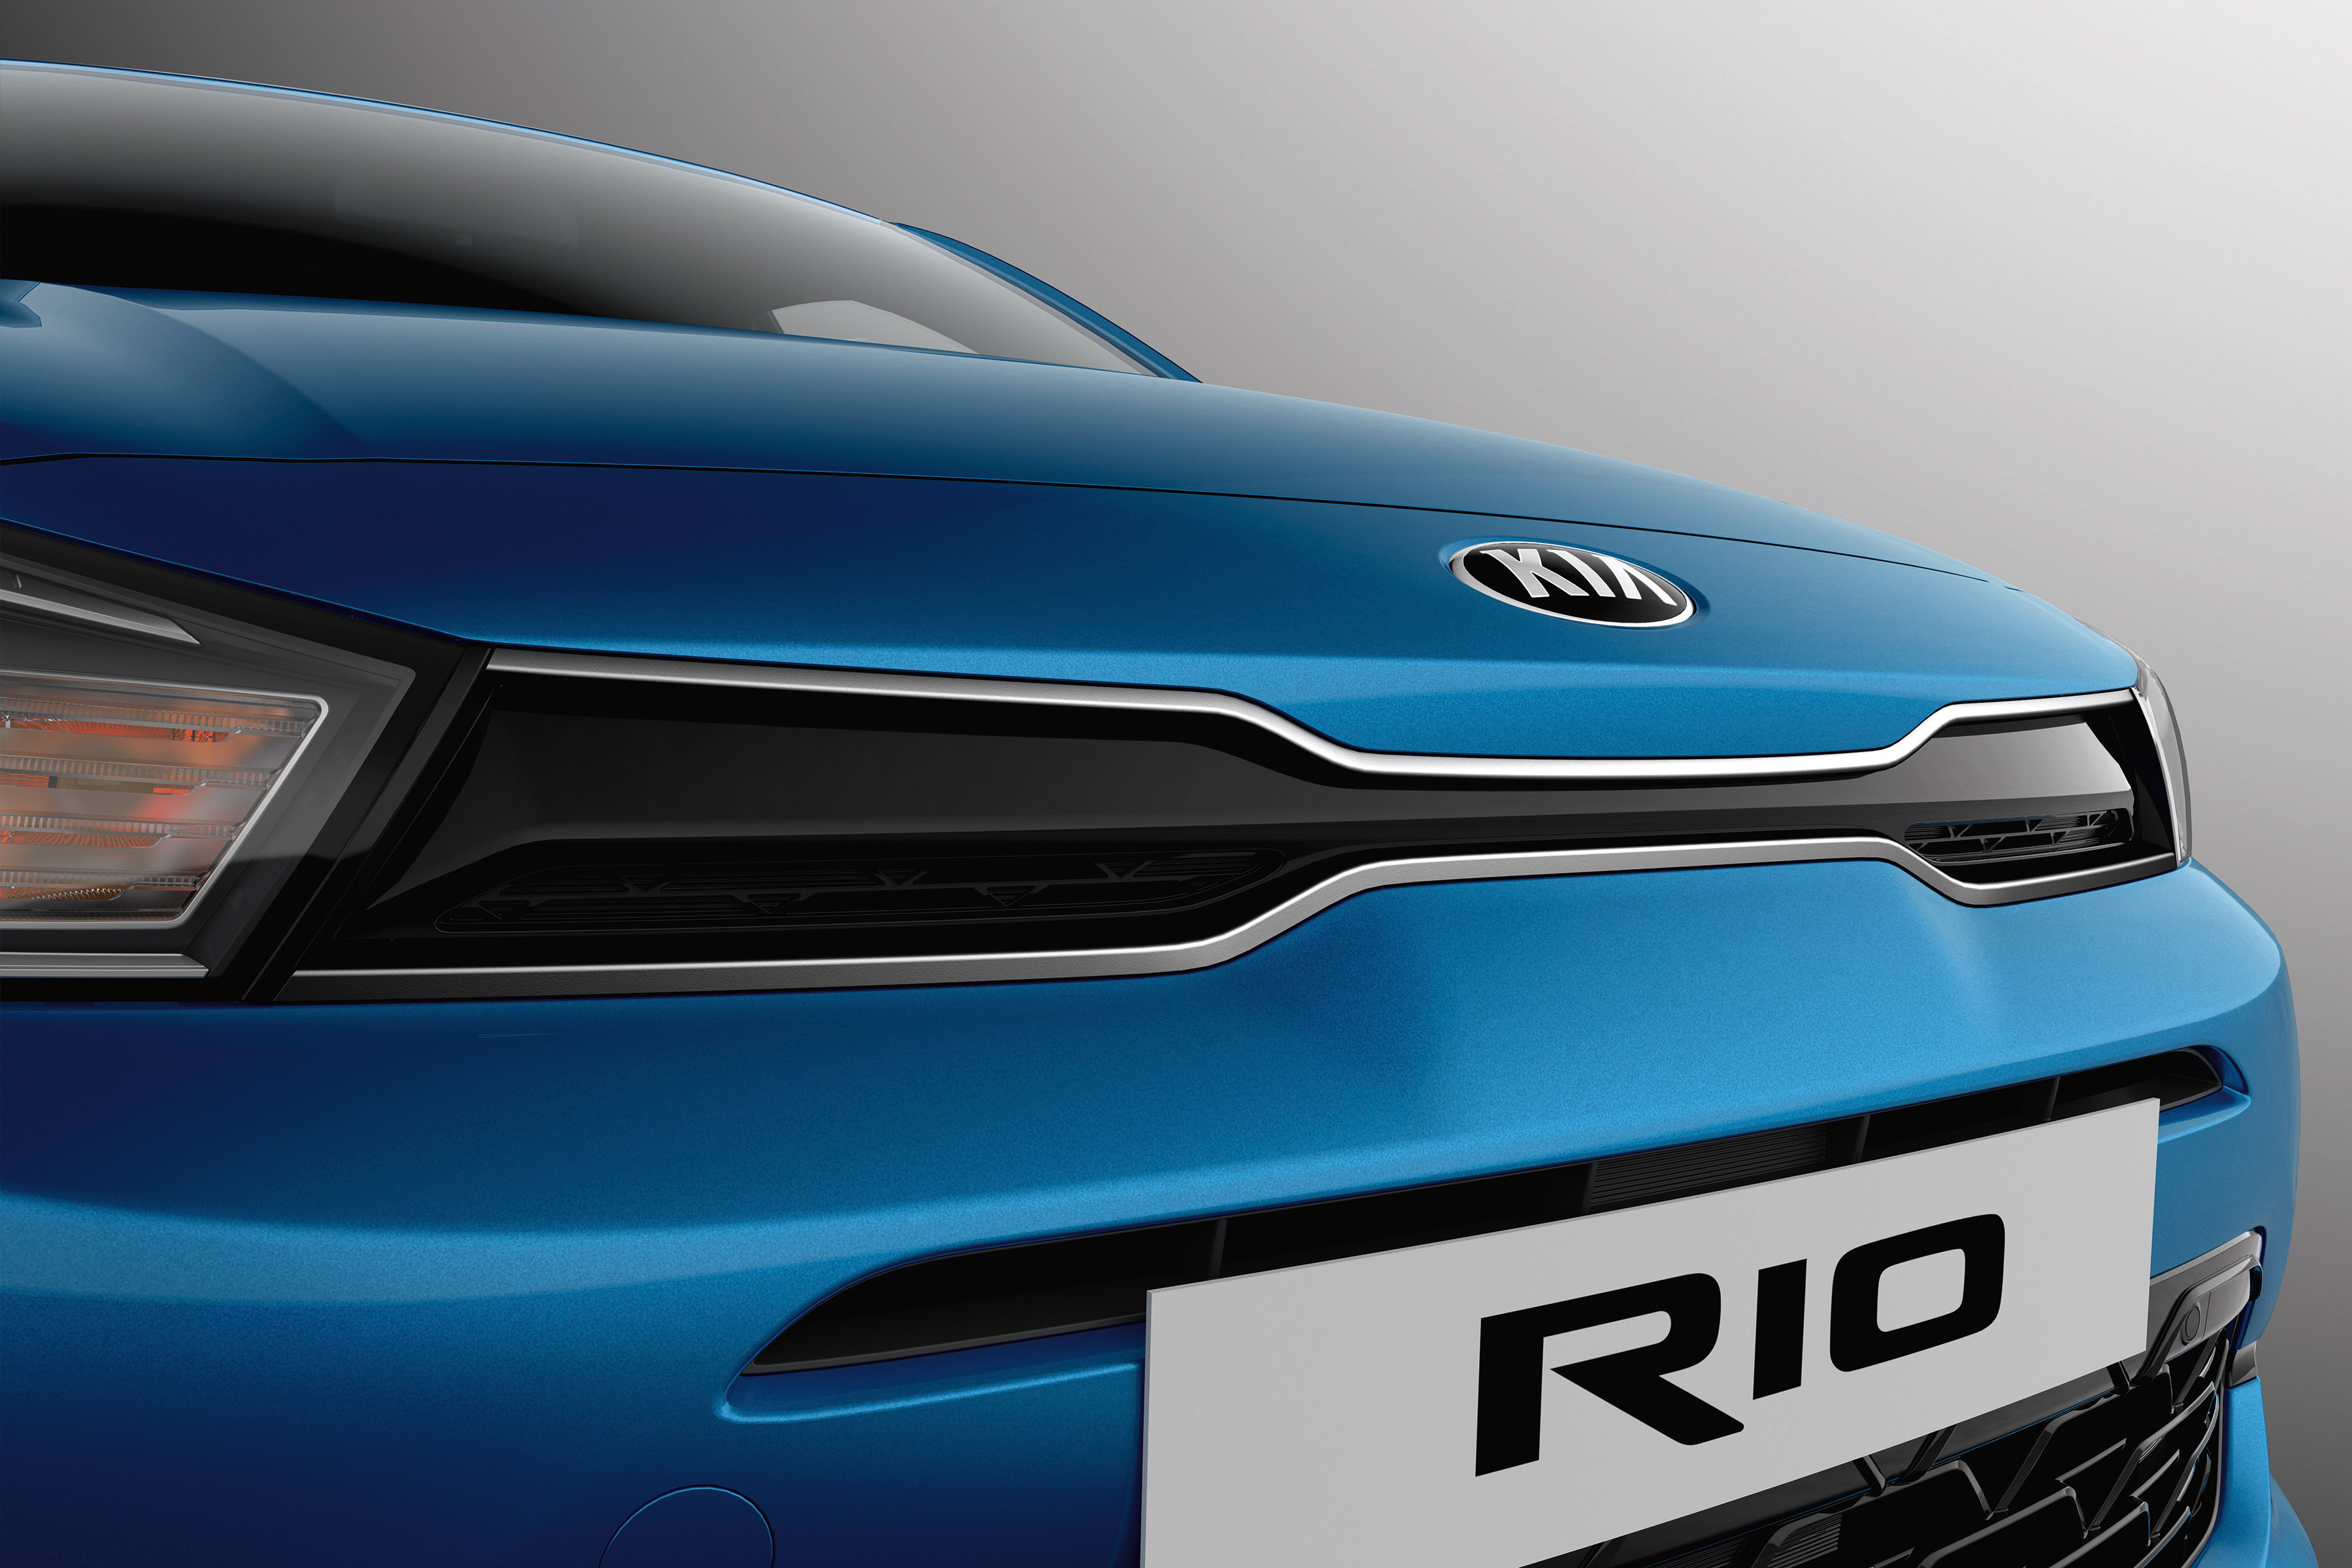 https://s3.paultan.org/image/2020/05/2020-Kia-Rio-facelift-official-reveal-5.jpg